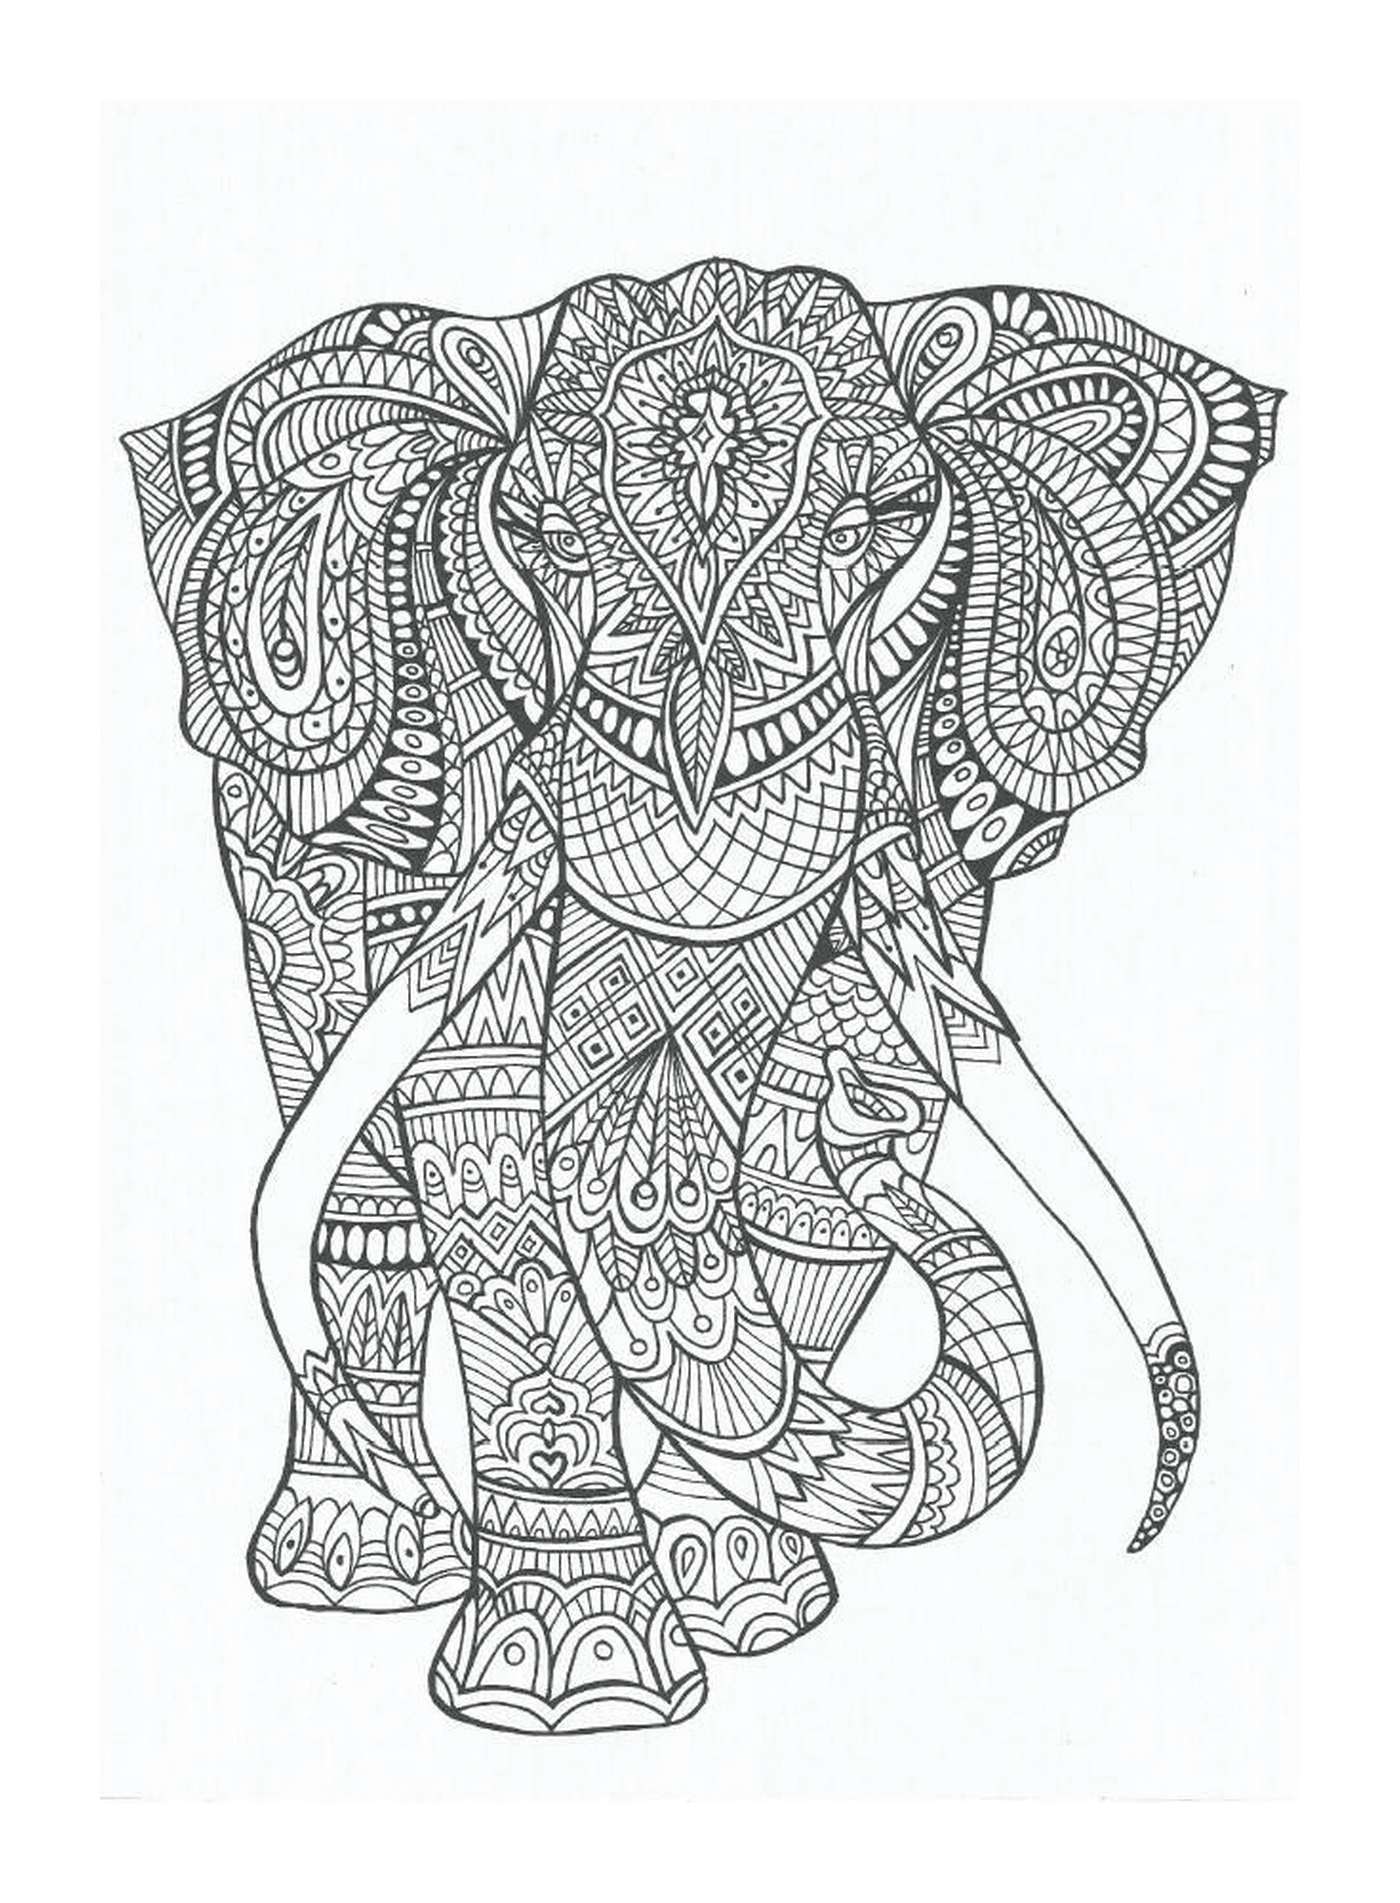  Un elefante decorato con mandala 